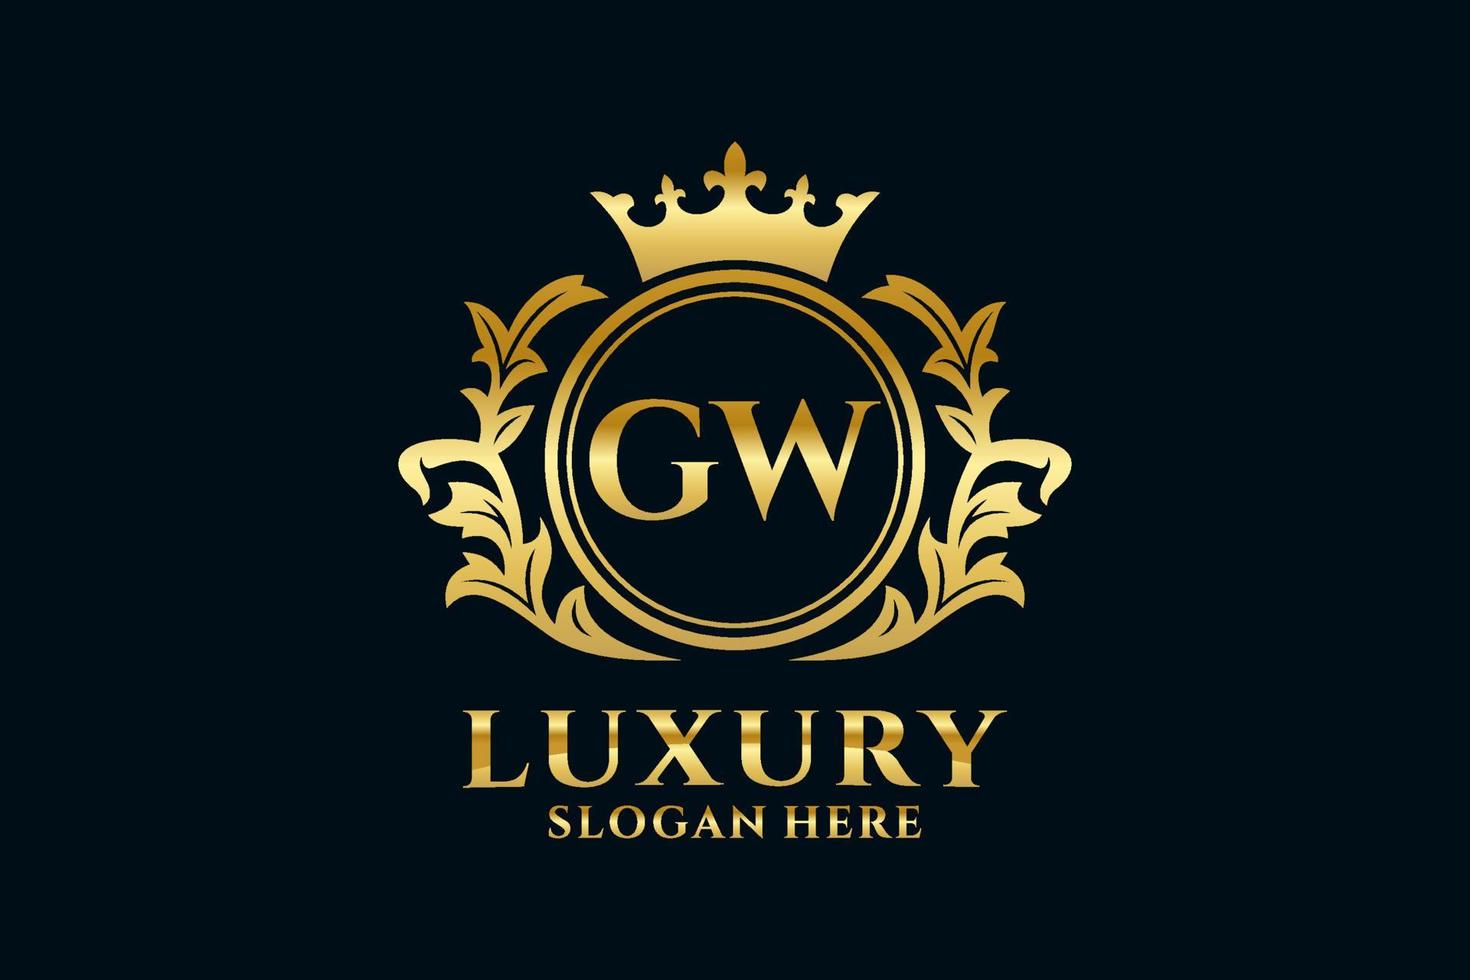 Royal Luxury Logo-Vorlage mit anfänglichem gw-Buchstaben in Vektorgrafiken für luxuriöse Branding-Projekte und andere Vektorillustrationen. vektor